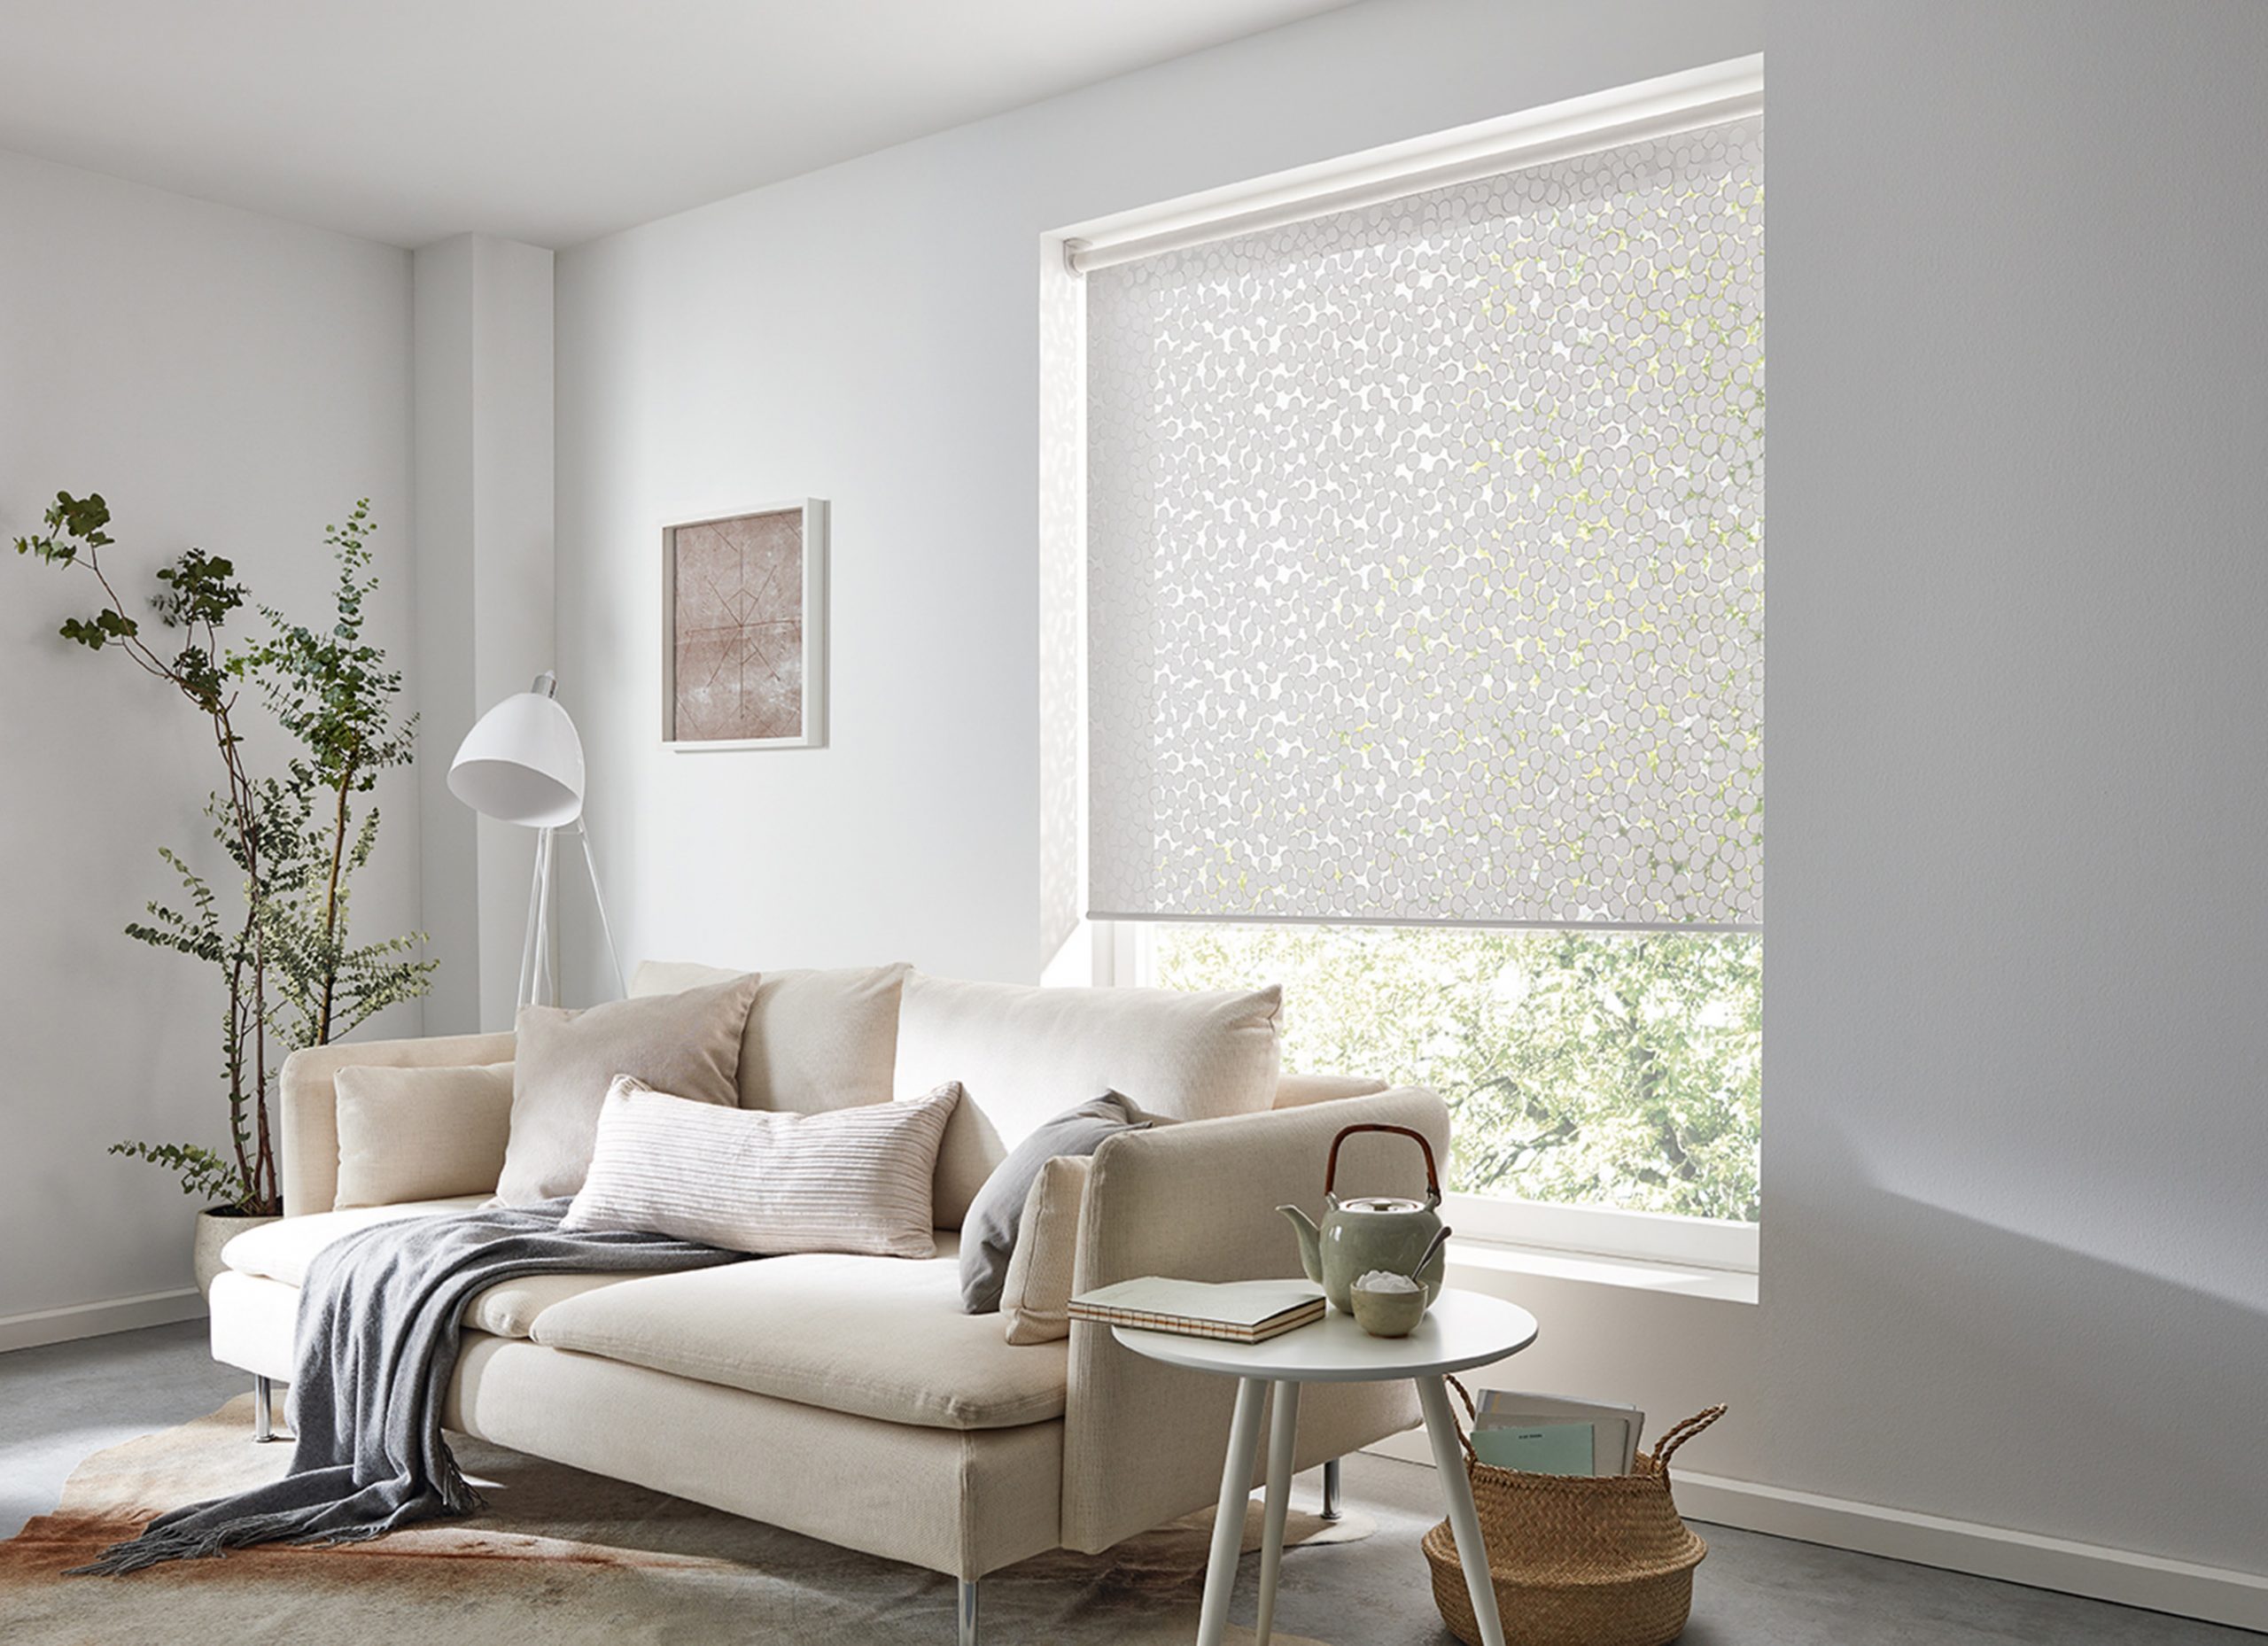 Das moderne Rollo am Fenster sorgt für einen effizienten Sicht- und Sonnenschutz